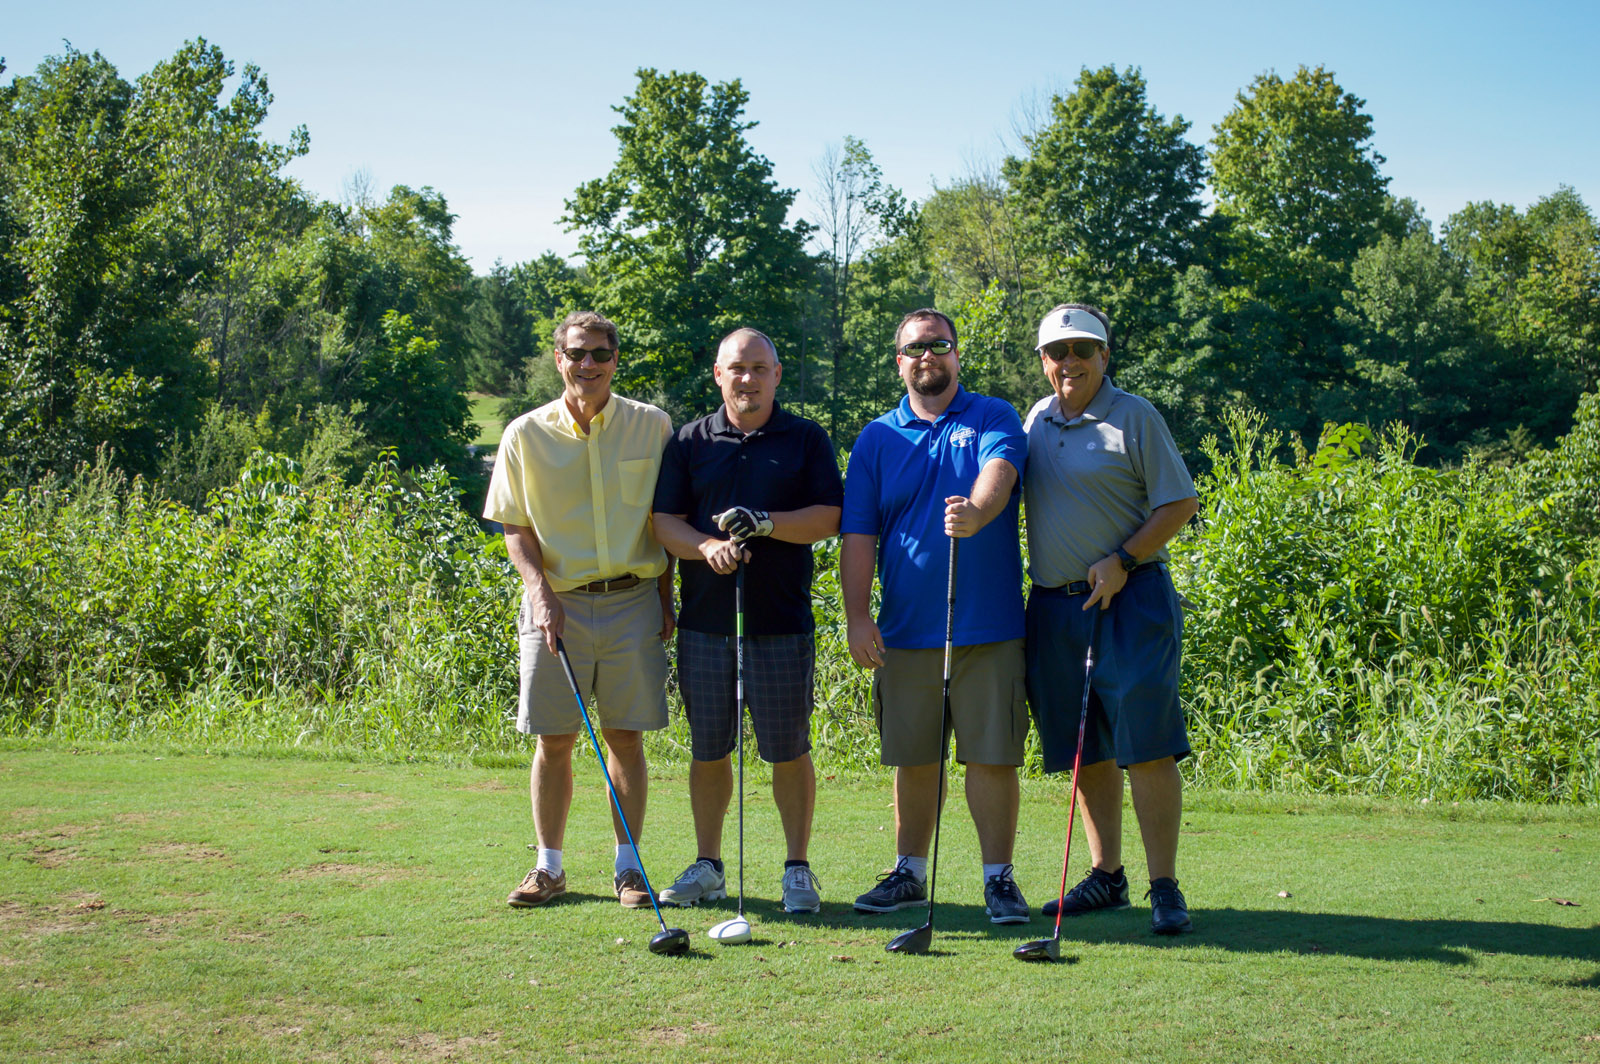 Eric Medlen Memorial Golf Tournament